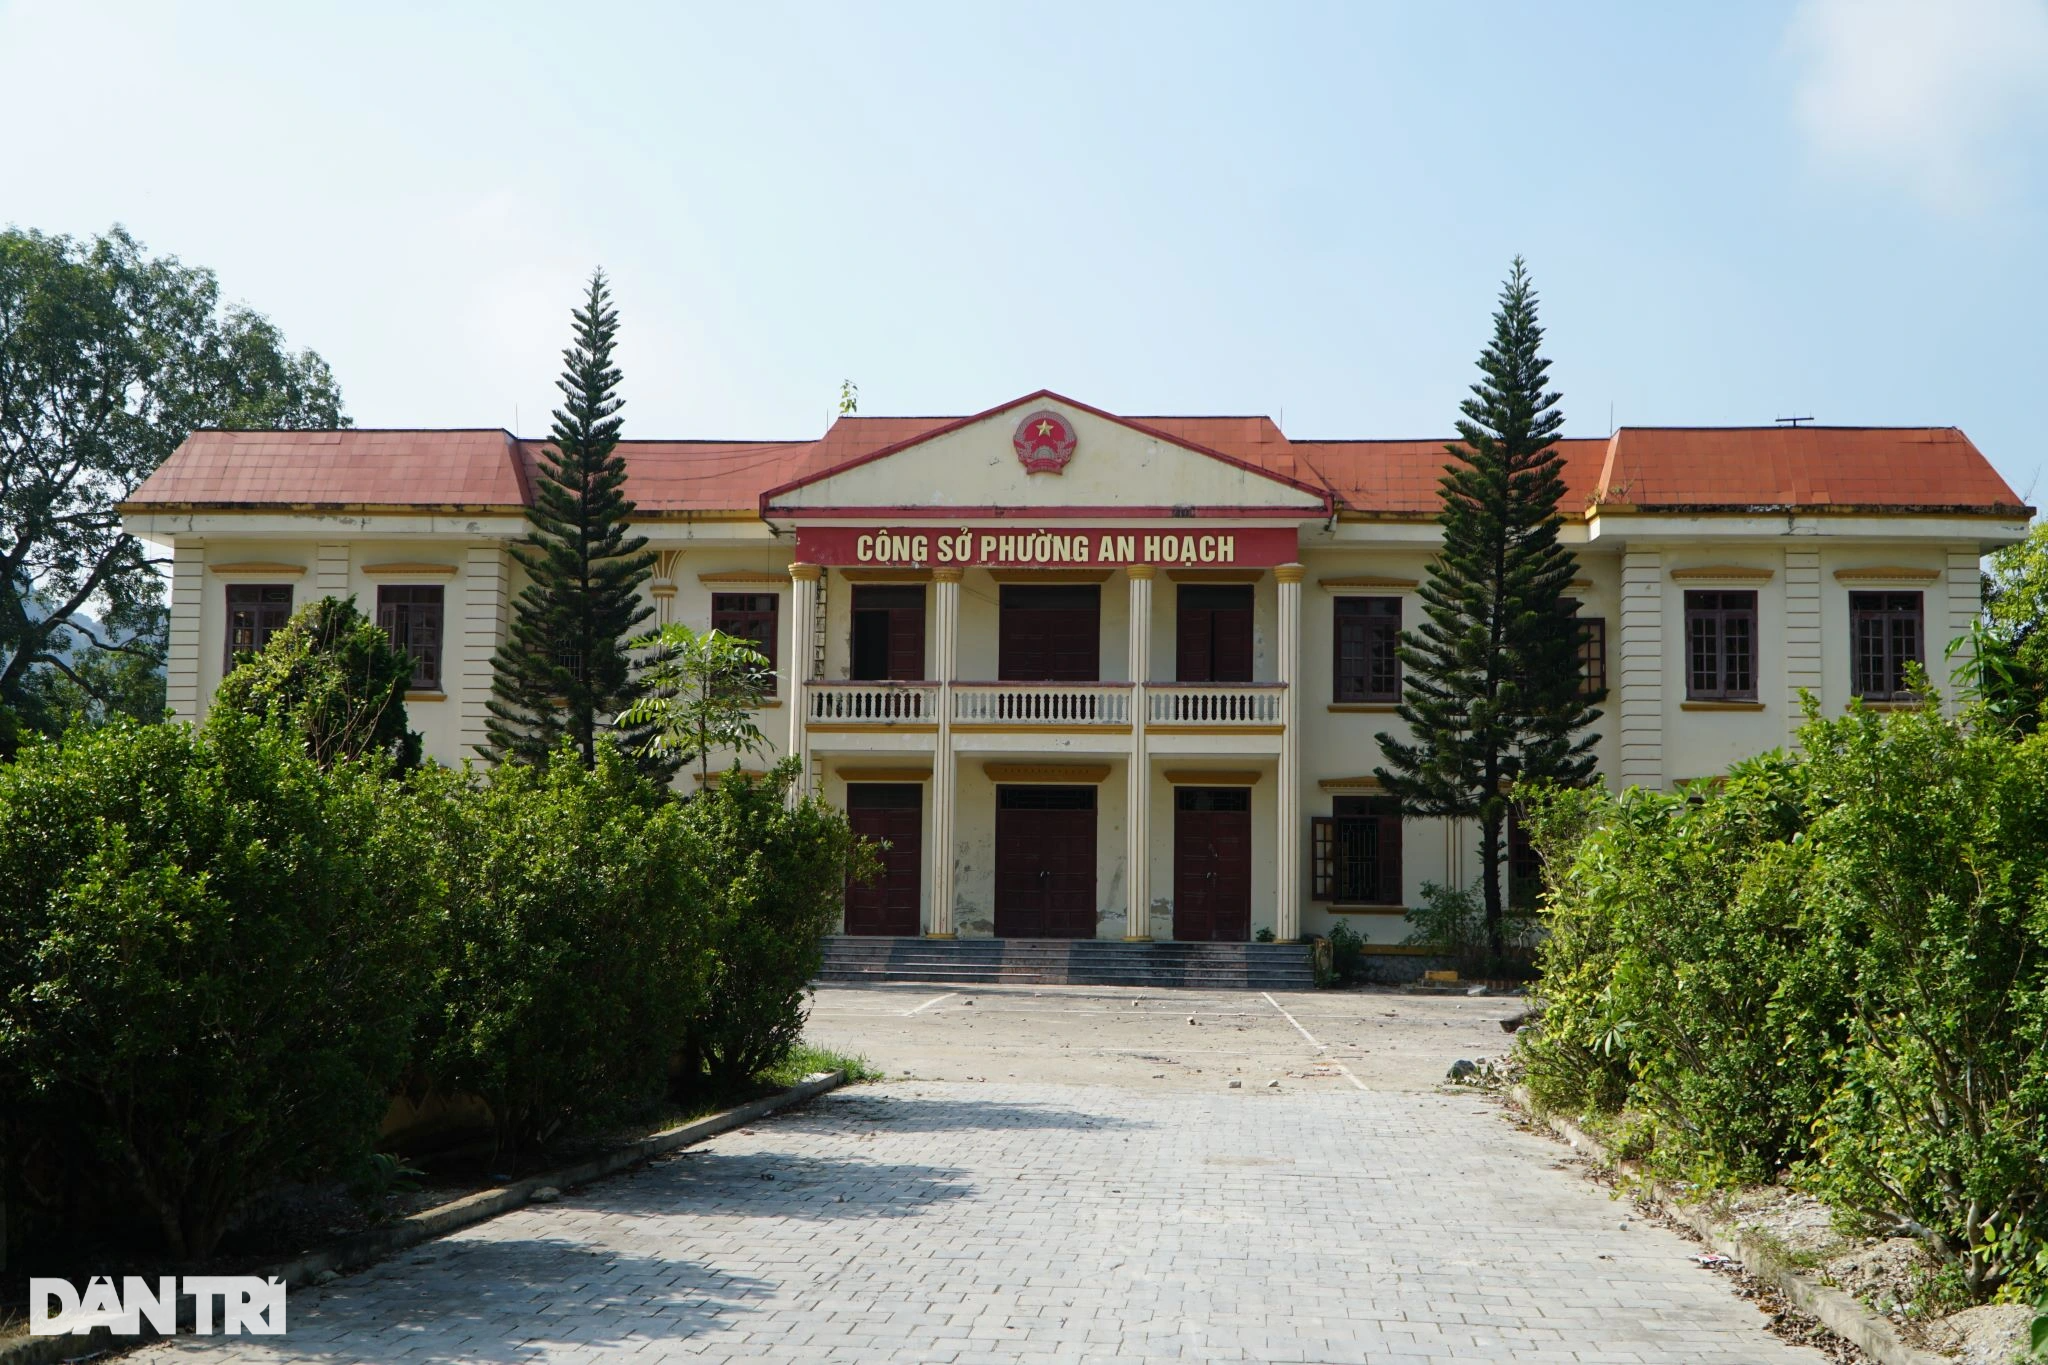 Loạt công sở tiền tỷ ở Thanh Hóa bỏ hoang sau sáp nhập - 1